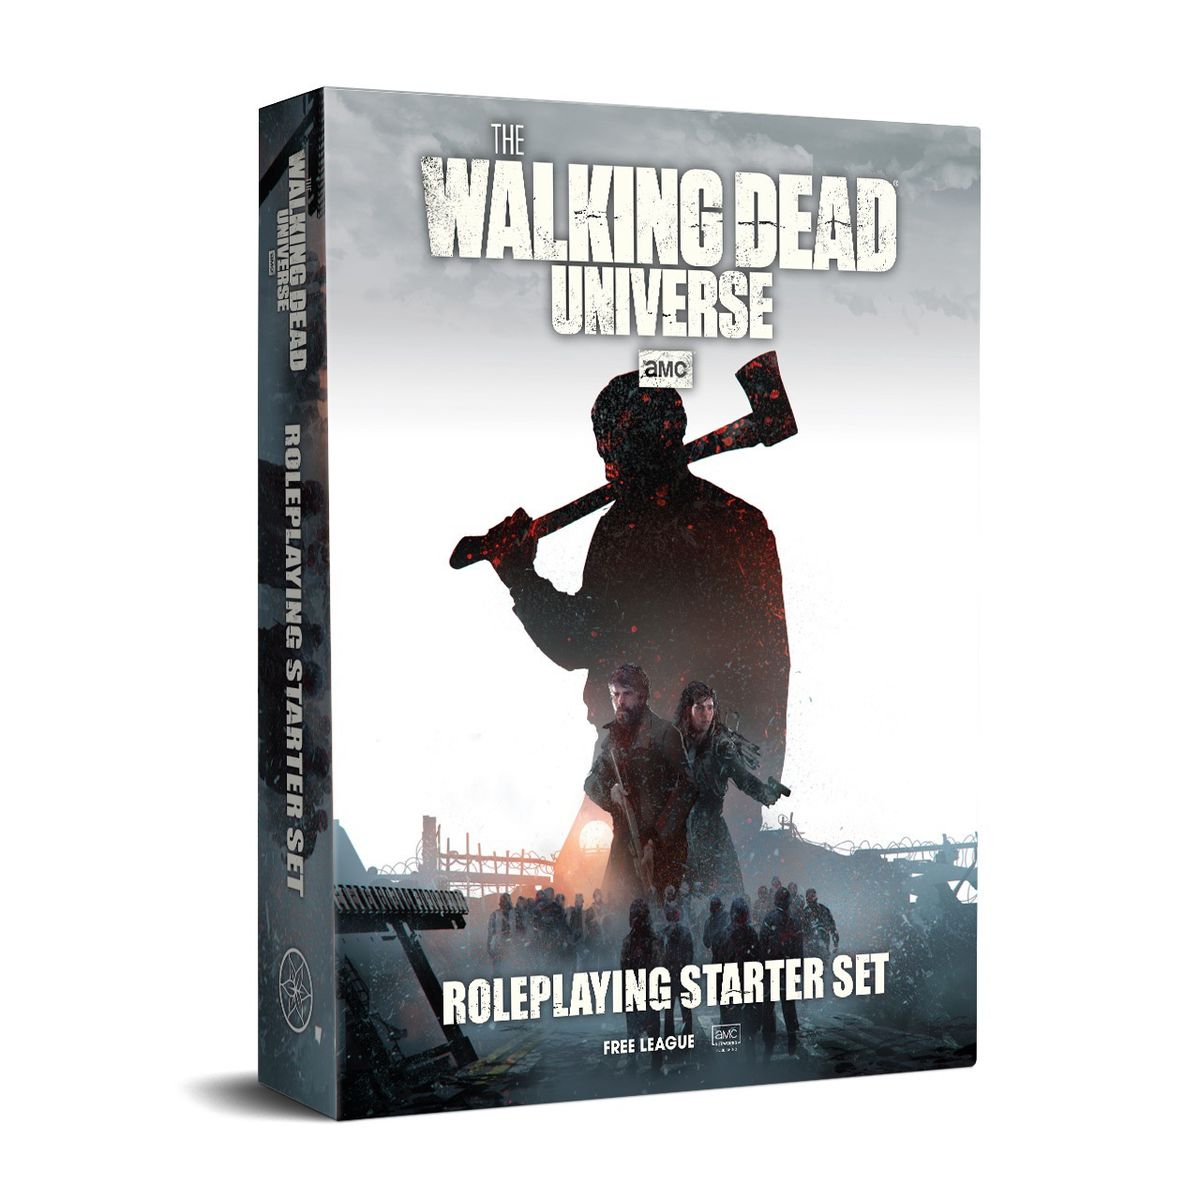 Un mockup dello starter set in scatola per The Walking Dead Universe.  L'arte chiave include un uomo con un'accetta in silhouette.